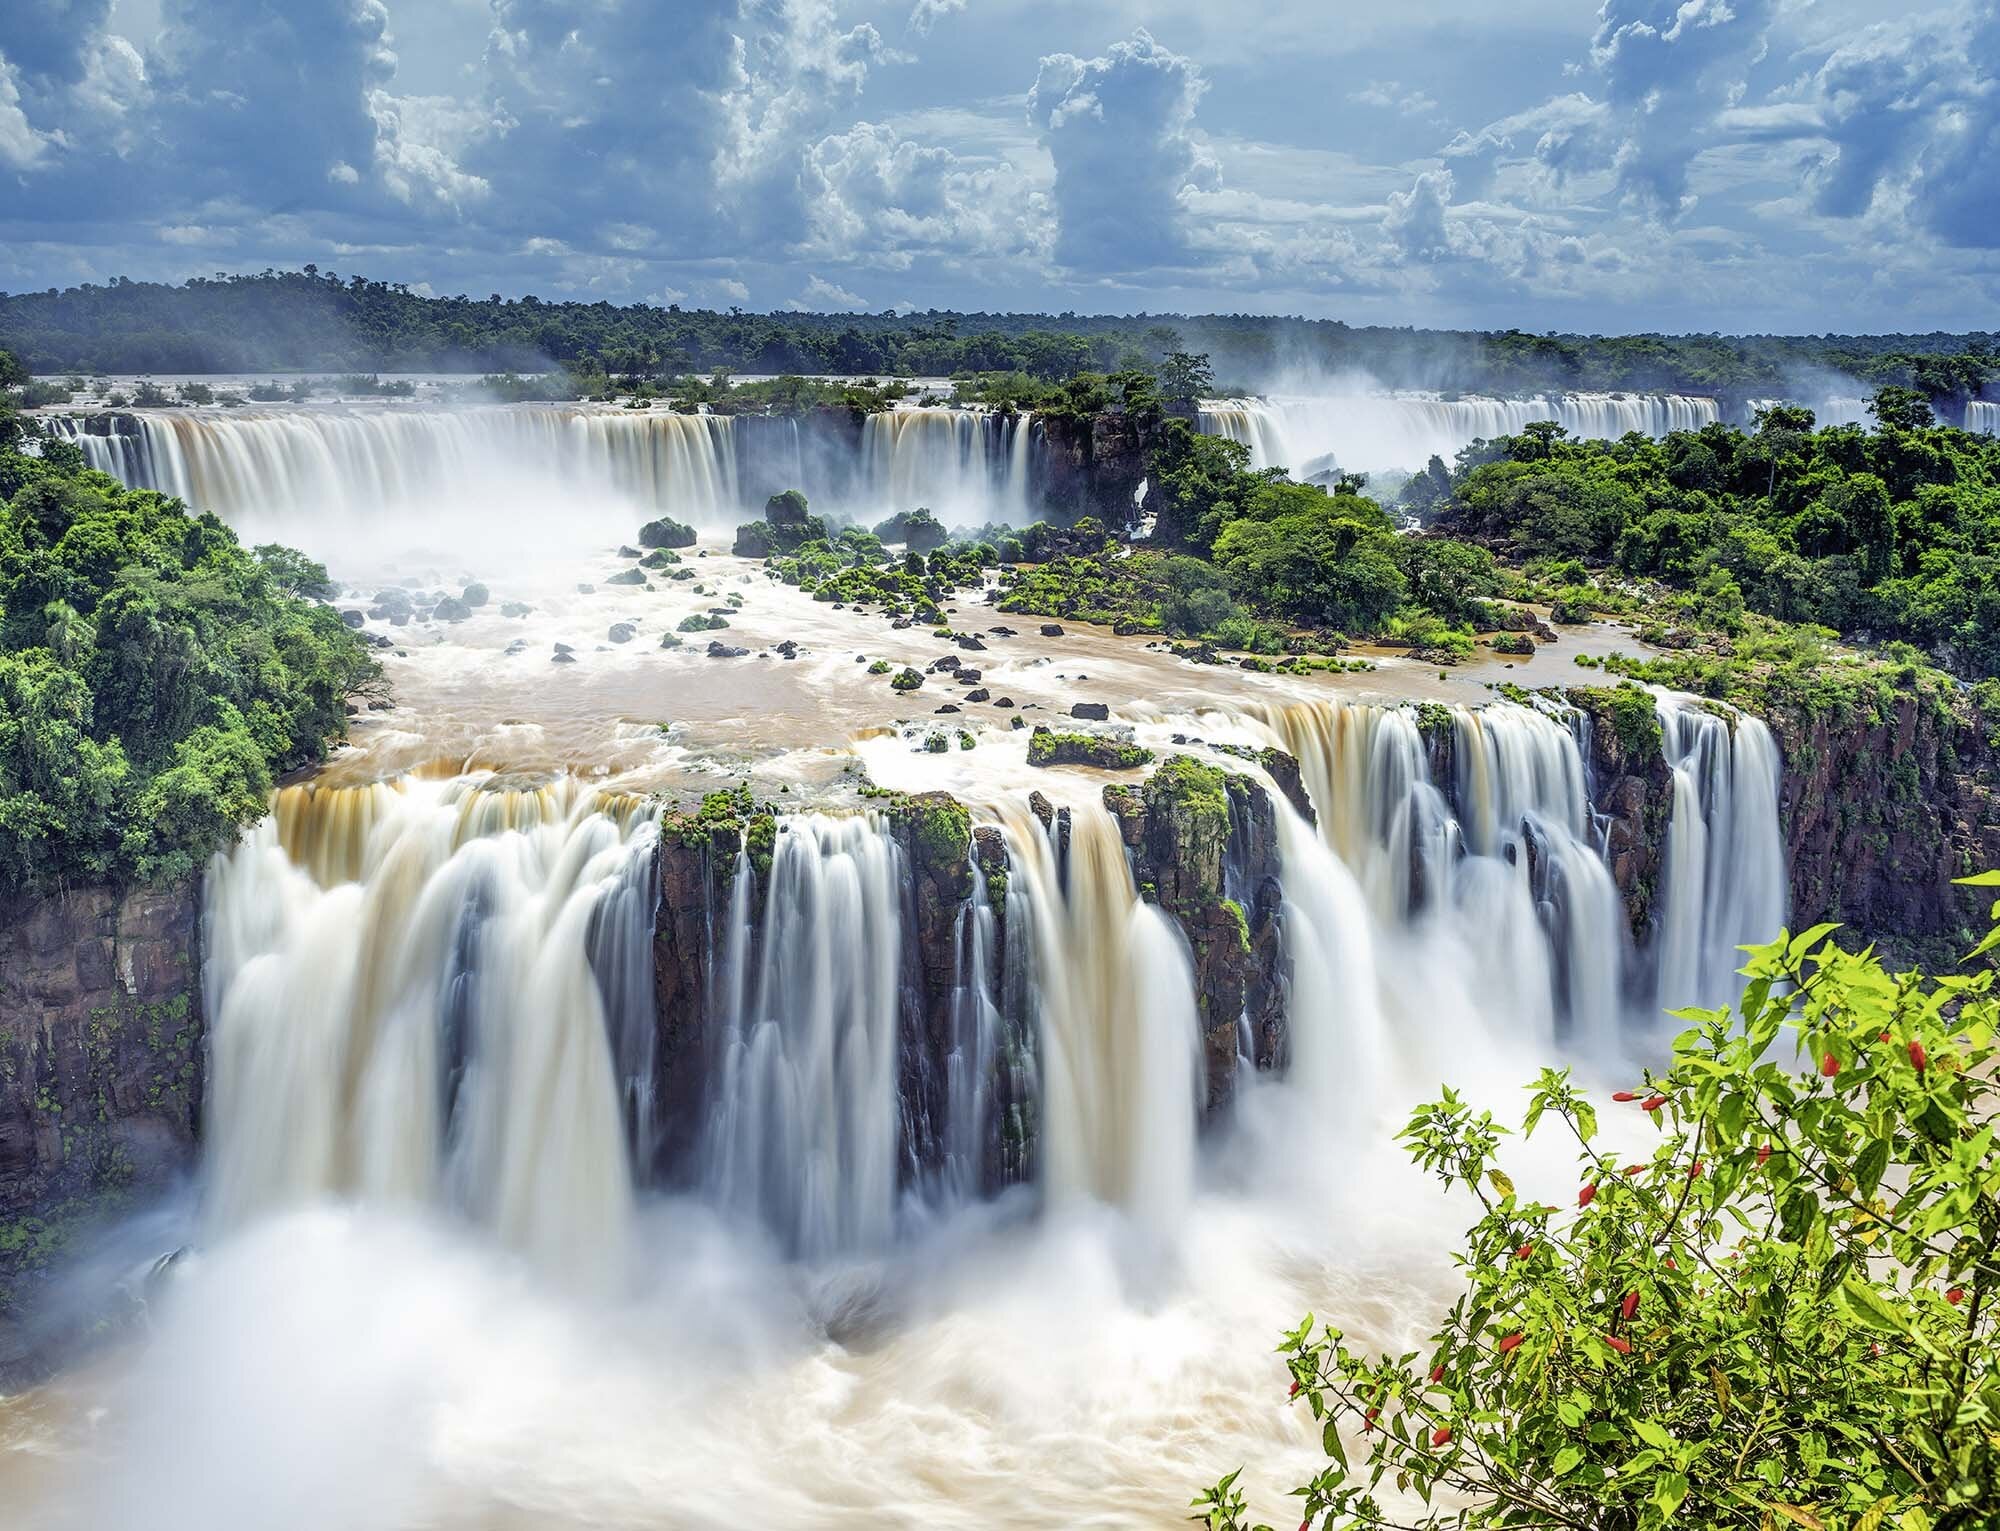 Ravensburger Puzzle - Wasserfälle von Iguazu 2000 Teile